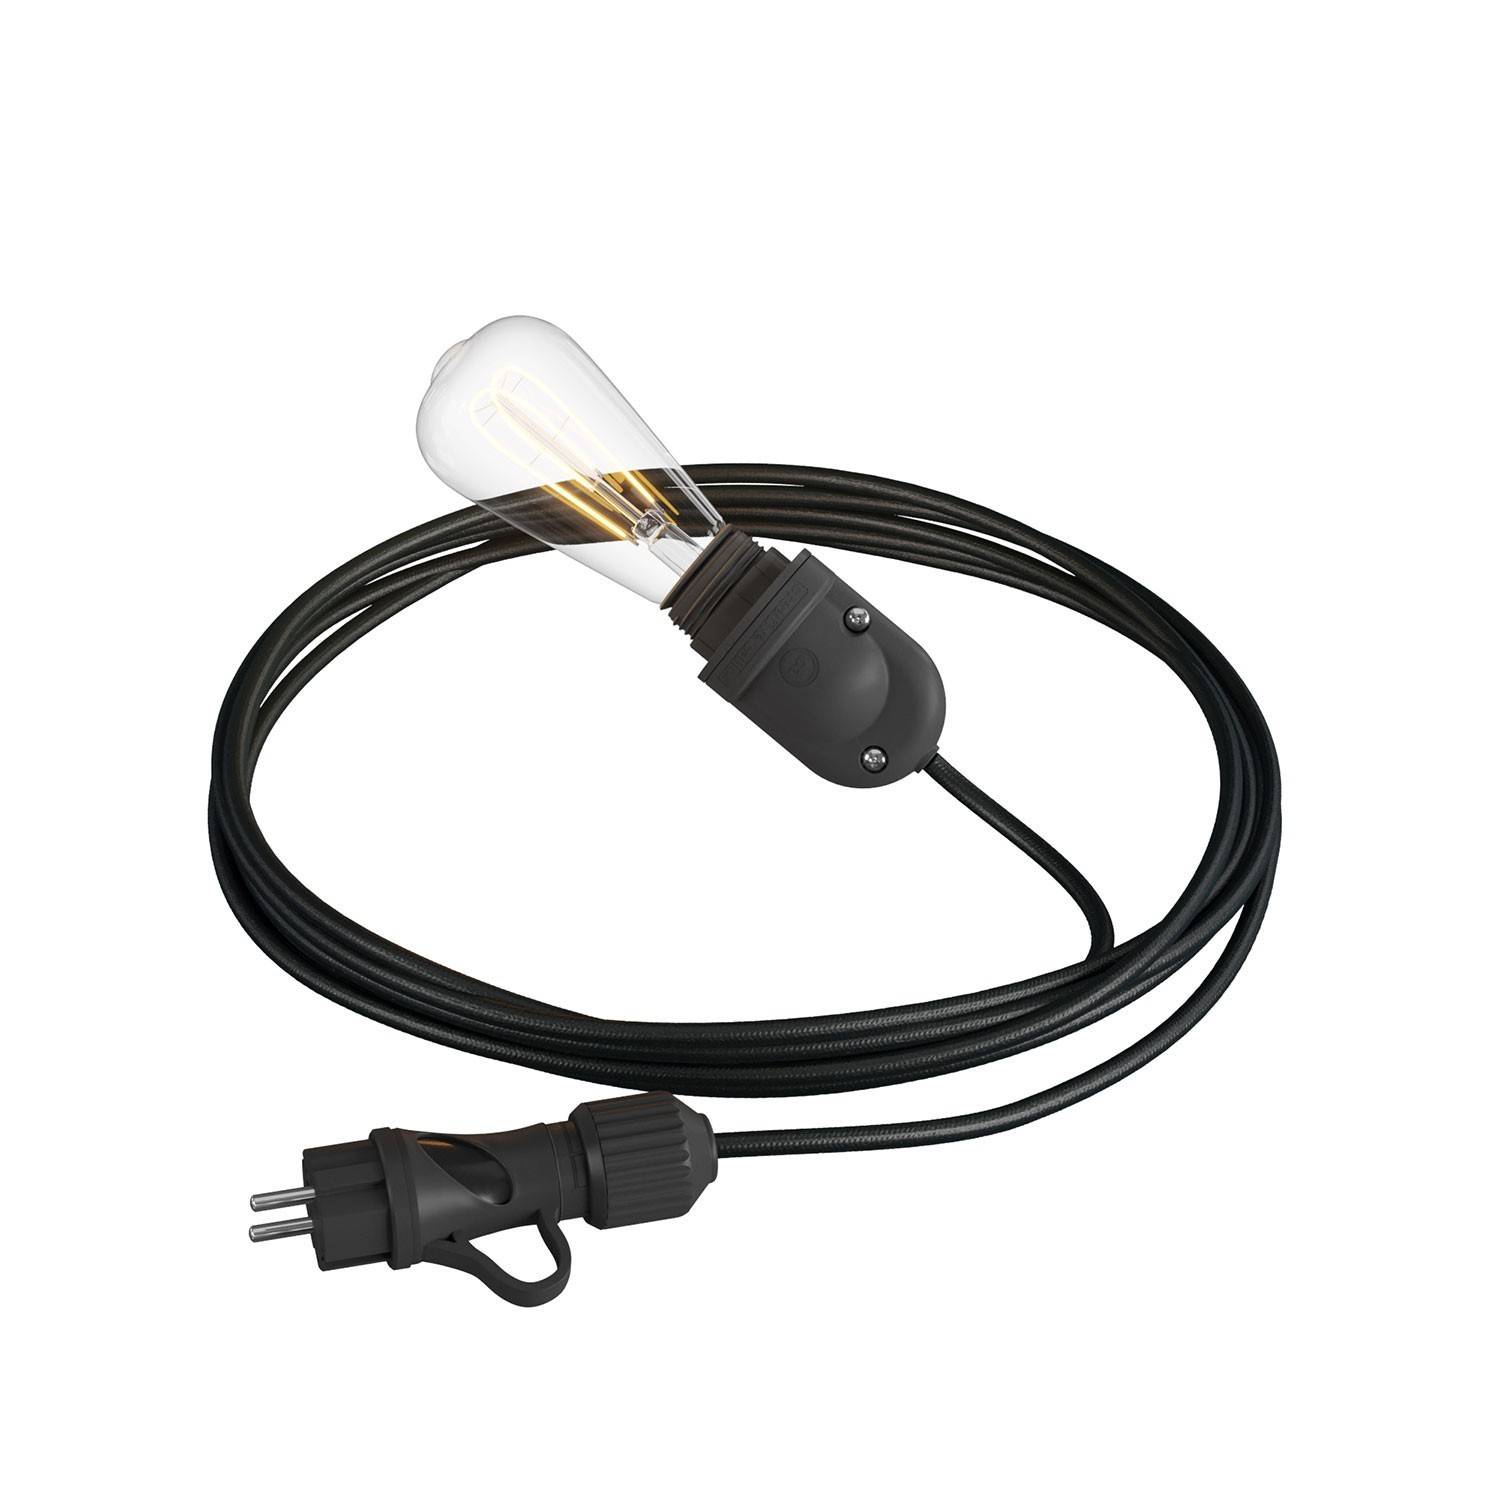 Eiva Snake, lampă portabilă pentru exterior, cablu textil de 5 m, suport și mufă impermeabile IP65.